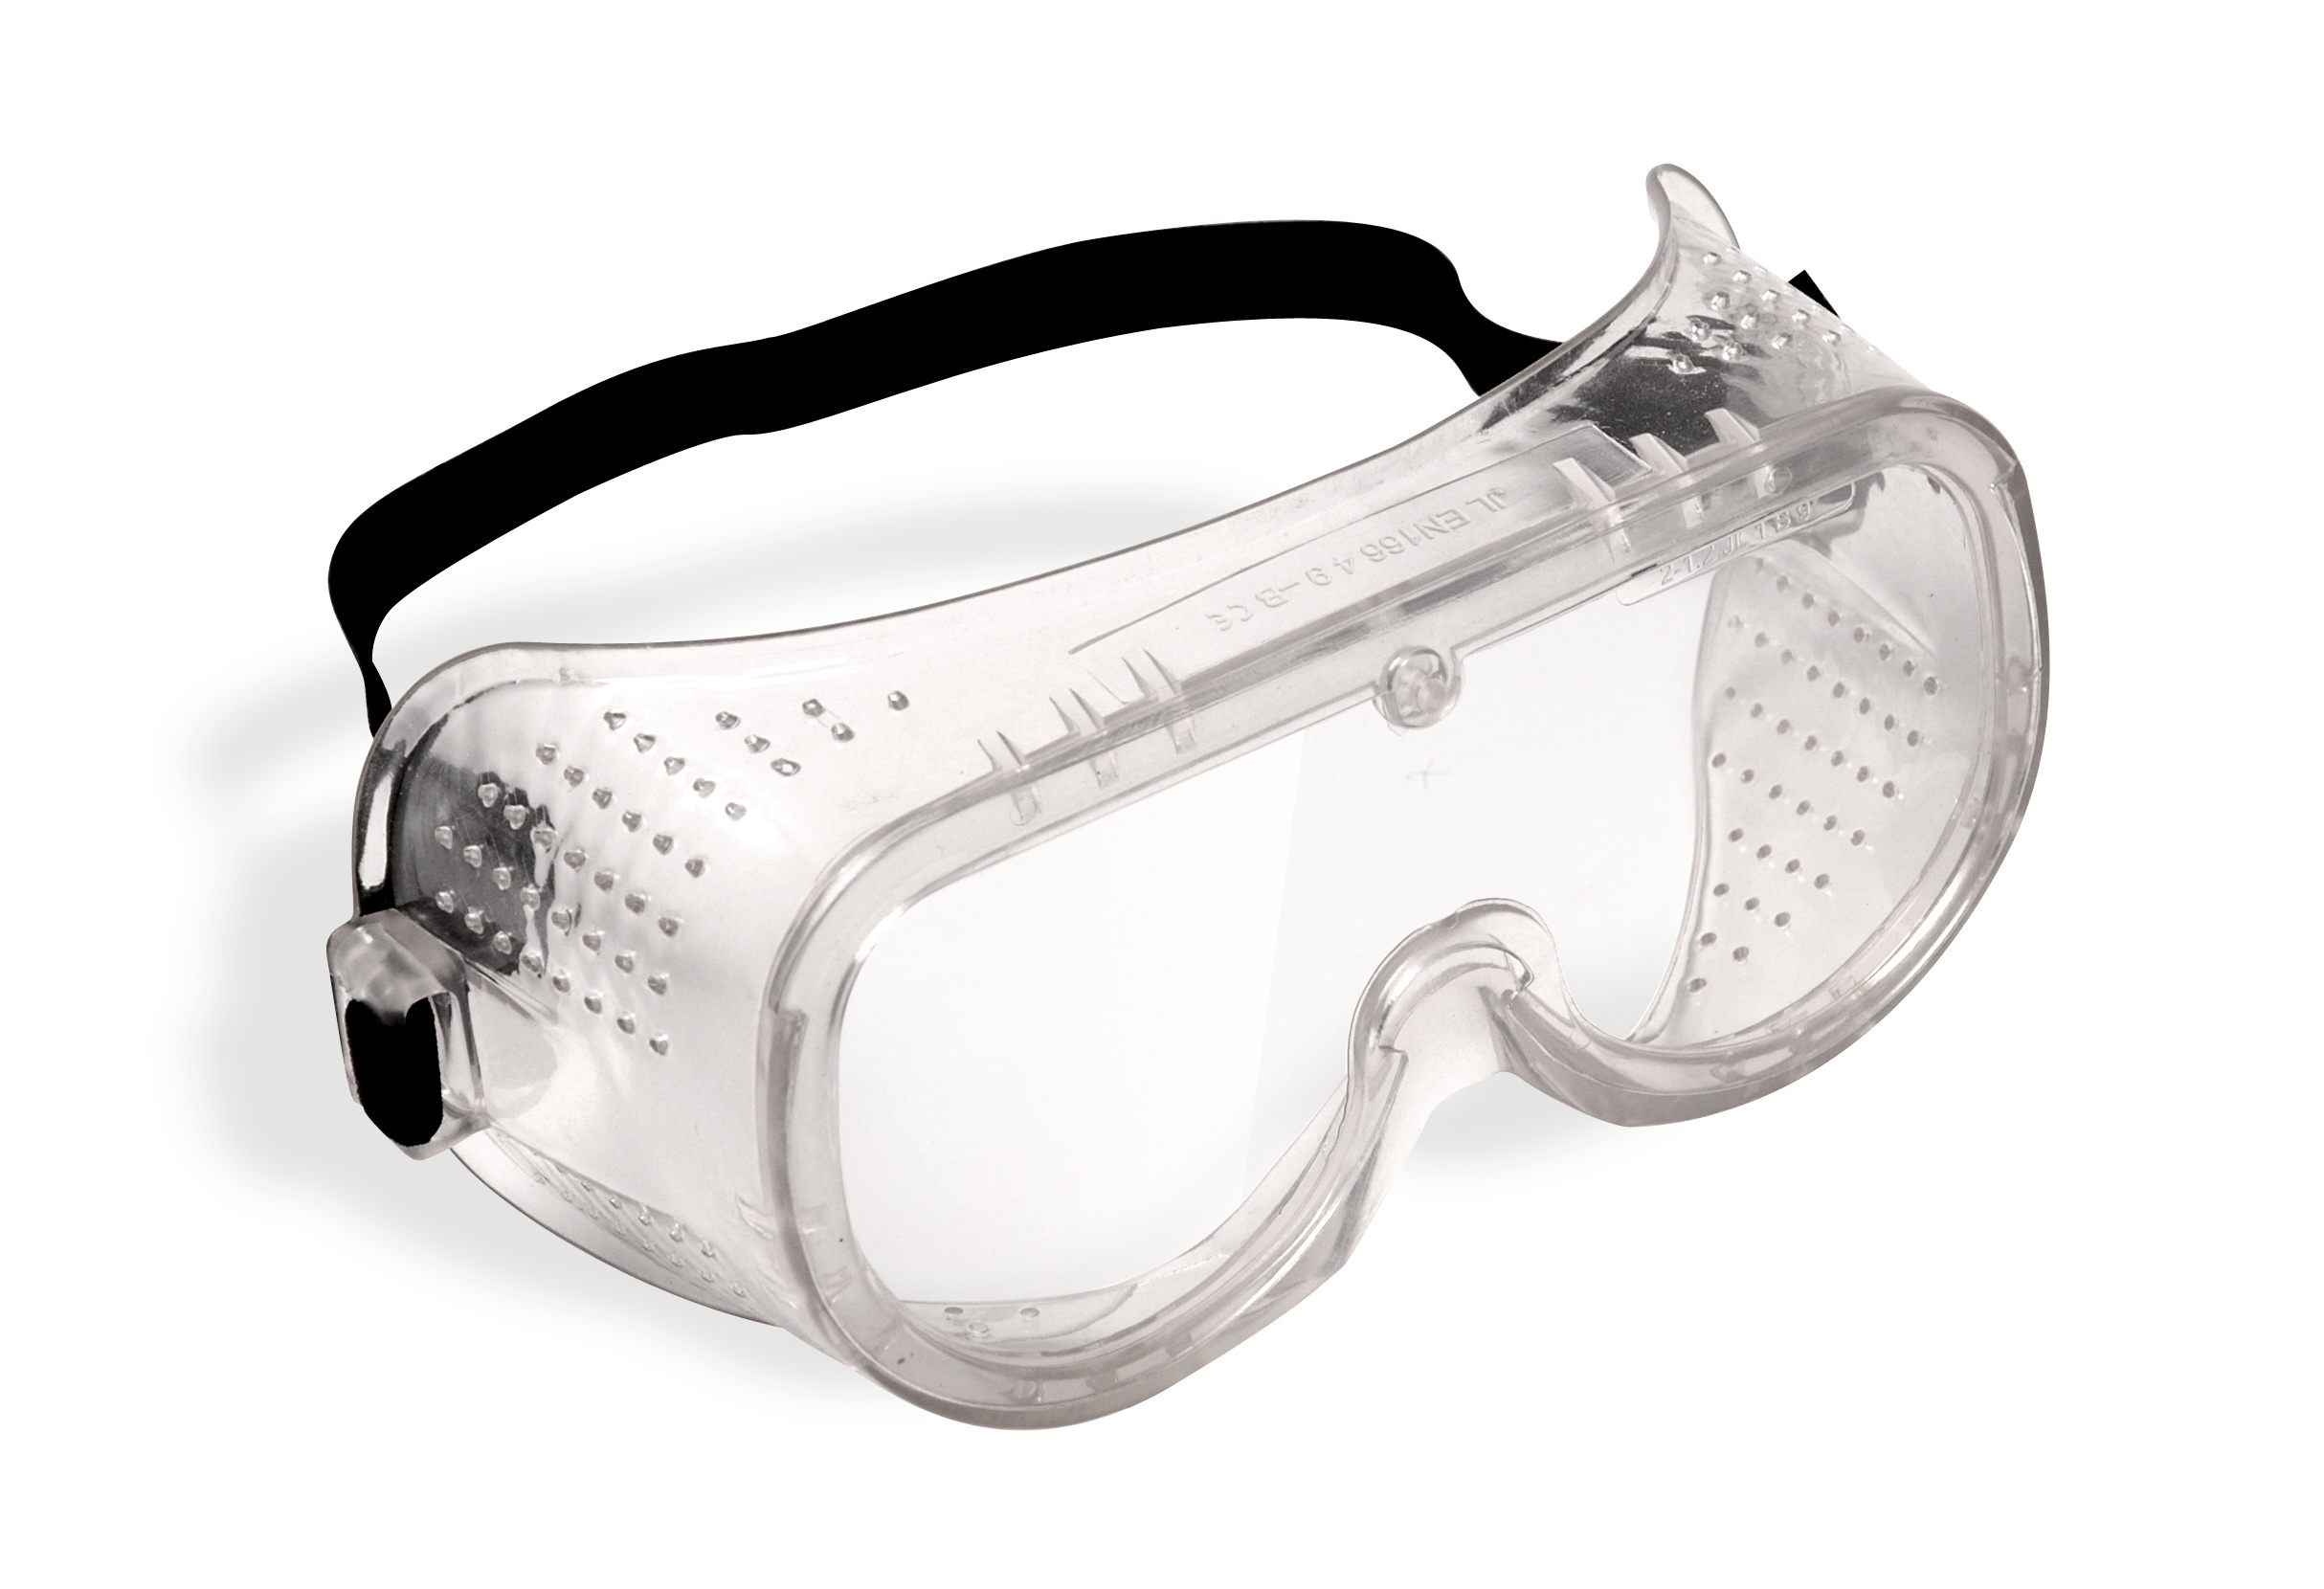 Лучшие защитные очки. Jsg1011-c Chem Vision очки защитные закрытого типа. Очки защитные "Исток" закрытого типа с прямой вентиляцией. Очки защитные с прямой вентиляцией р2 ПВ 964738. Очки защитные с прямой вентиляцией 89161.